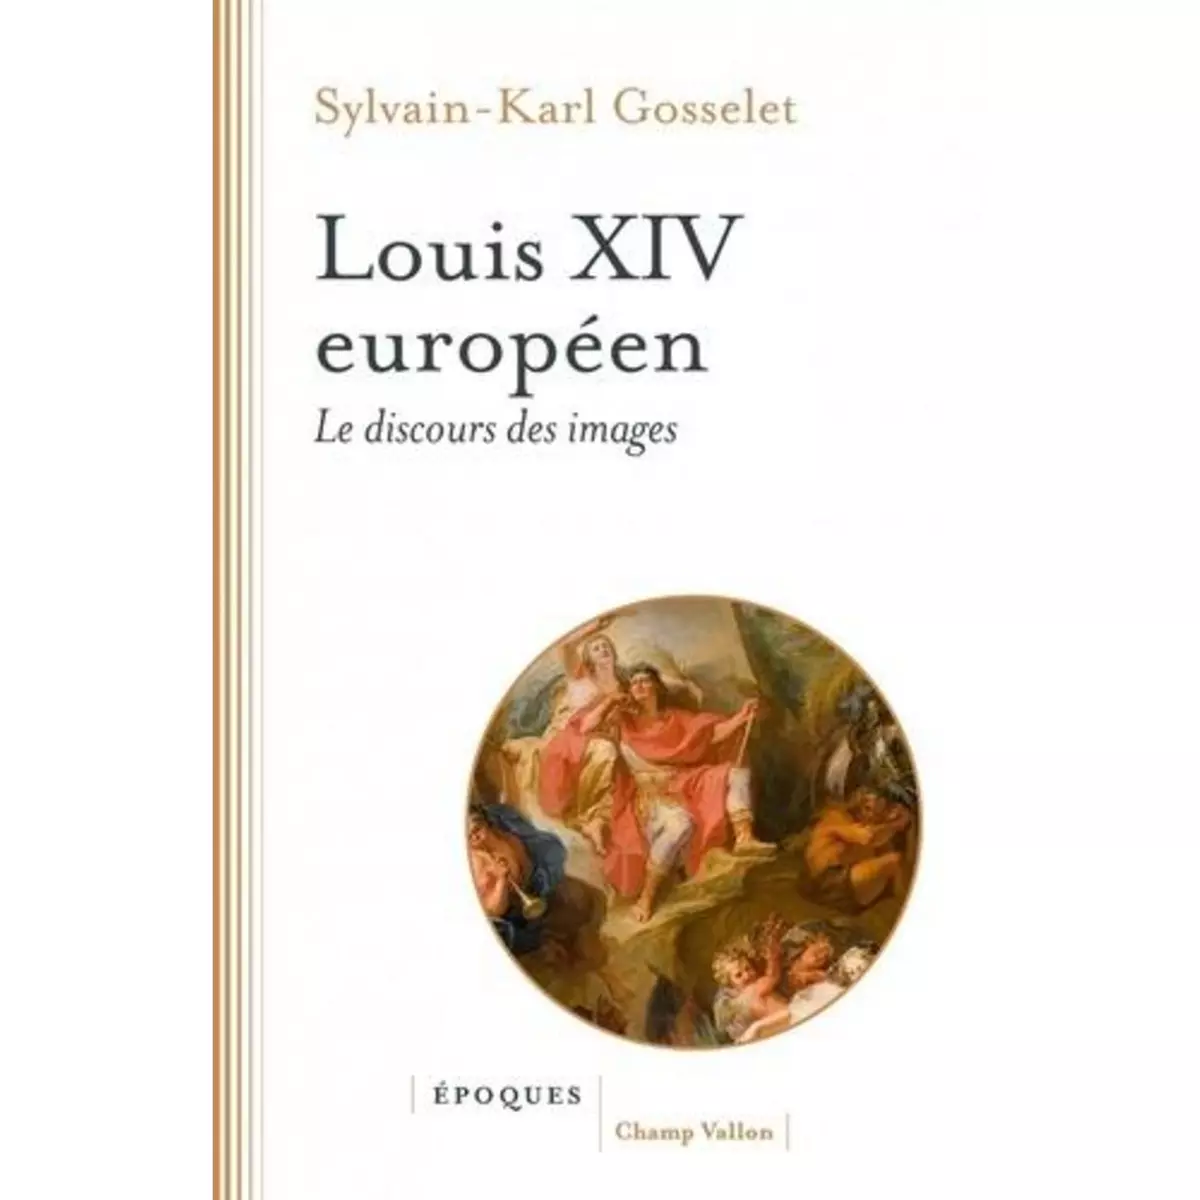  LOUIS XIV EUROPEEN. LE DISCOURS DES IMAGES, Gosselet Sylvain-Karl